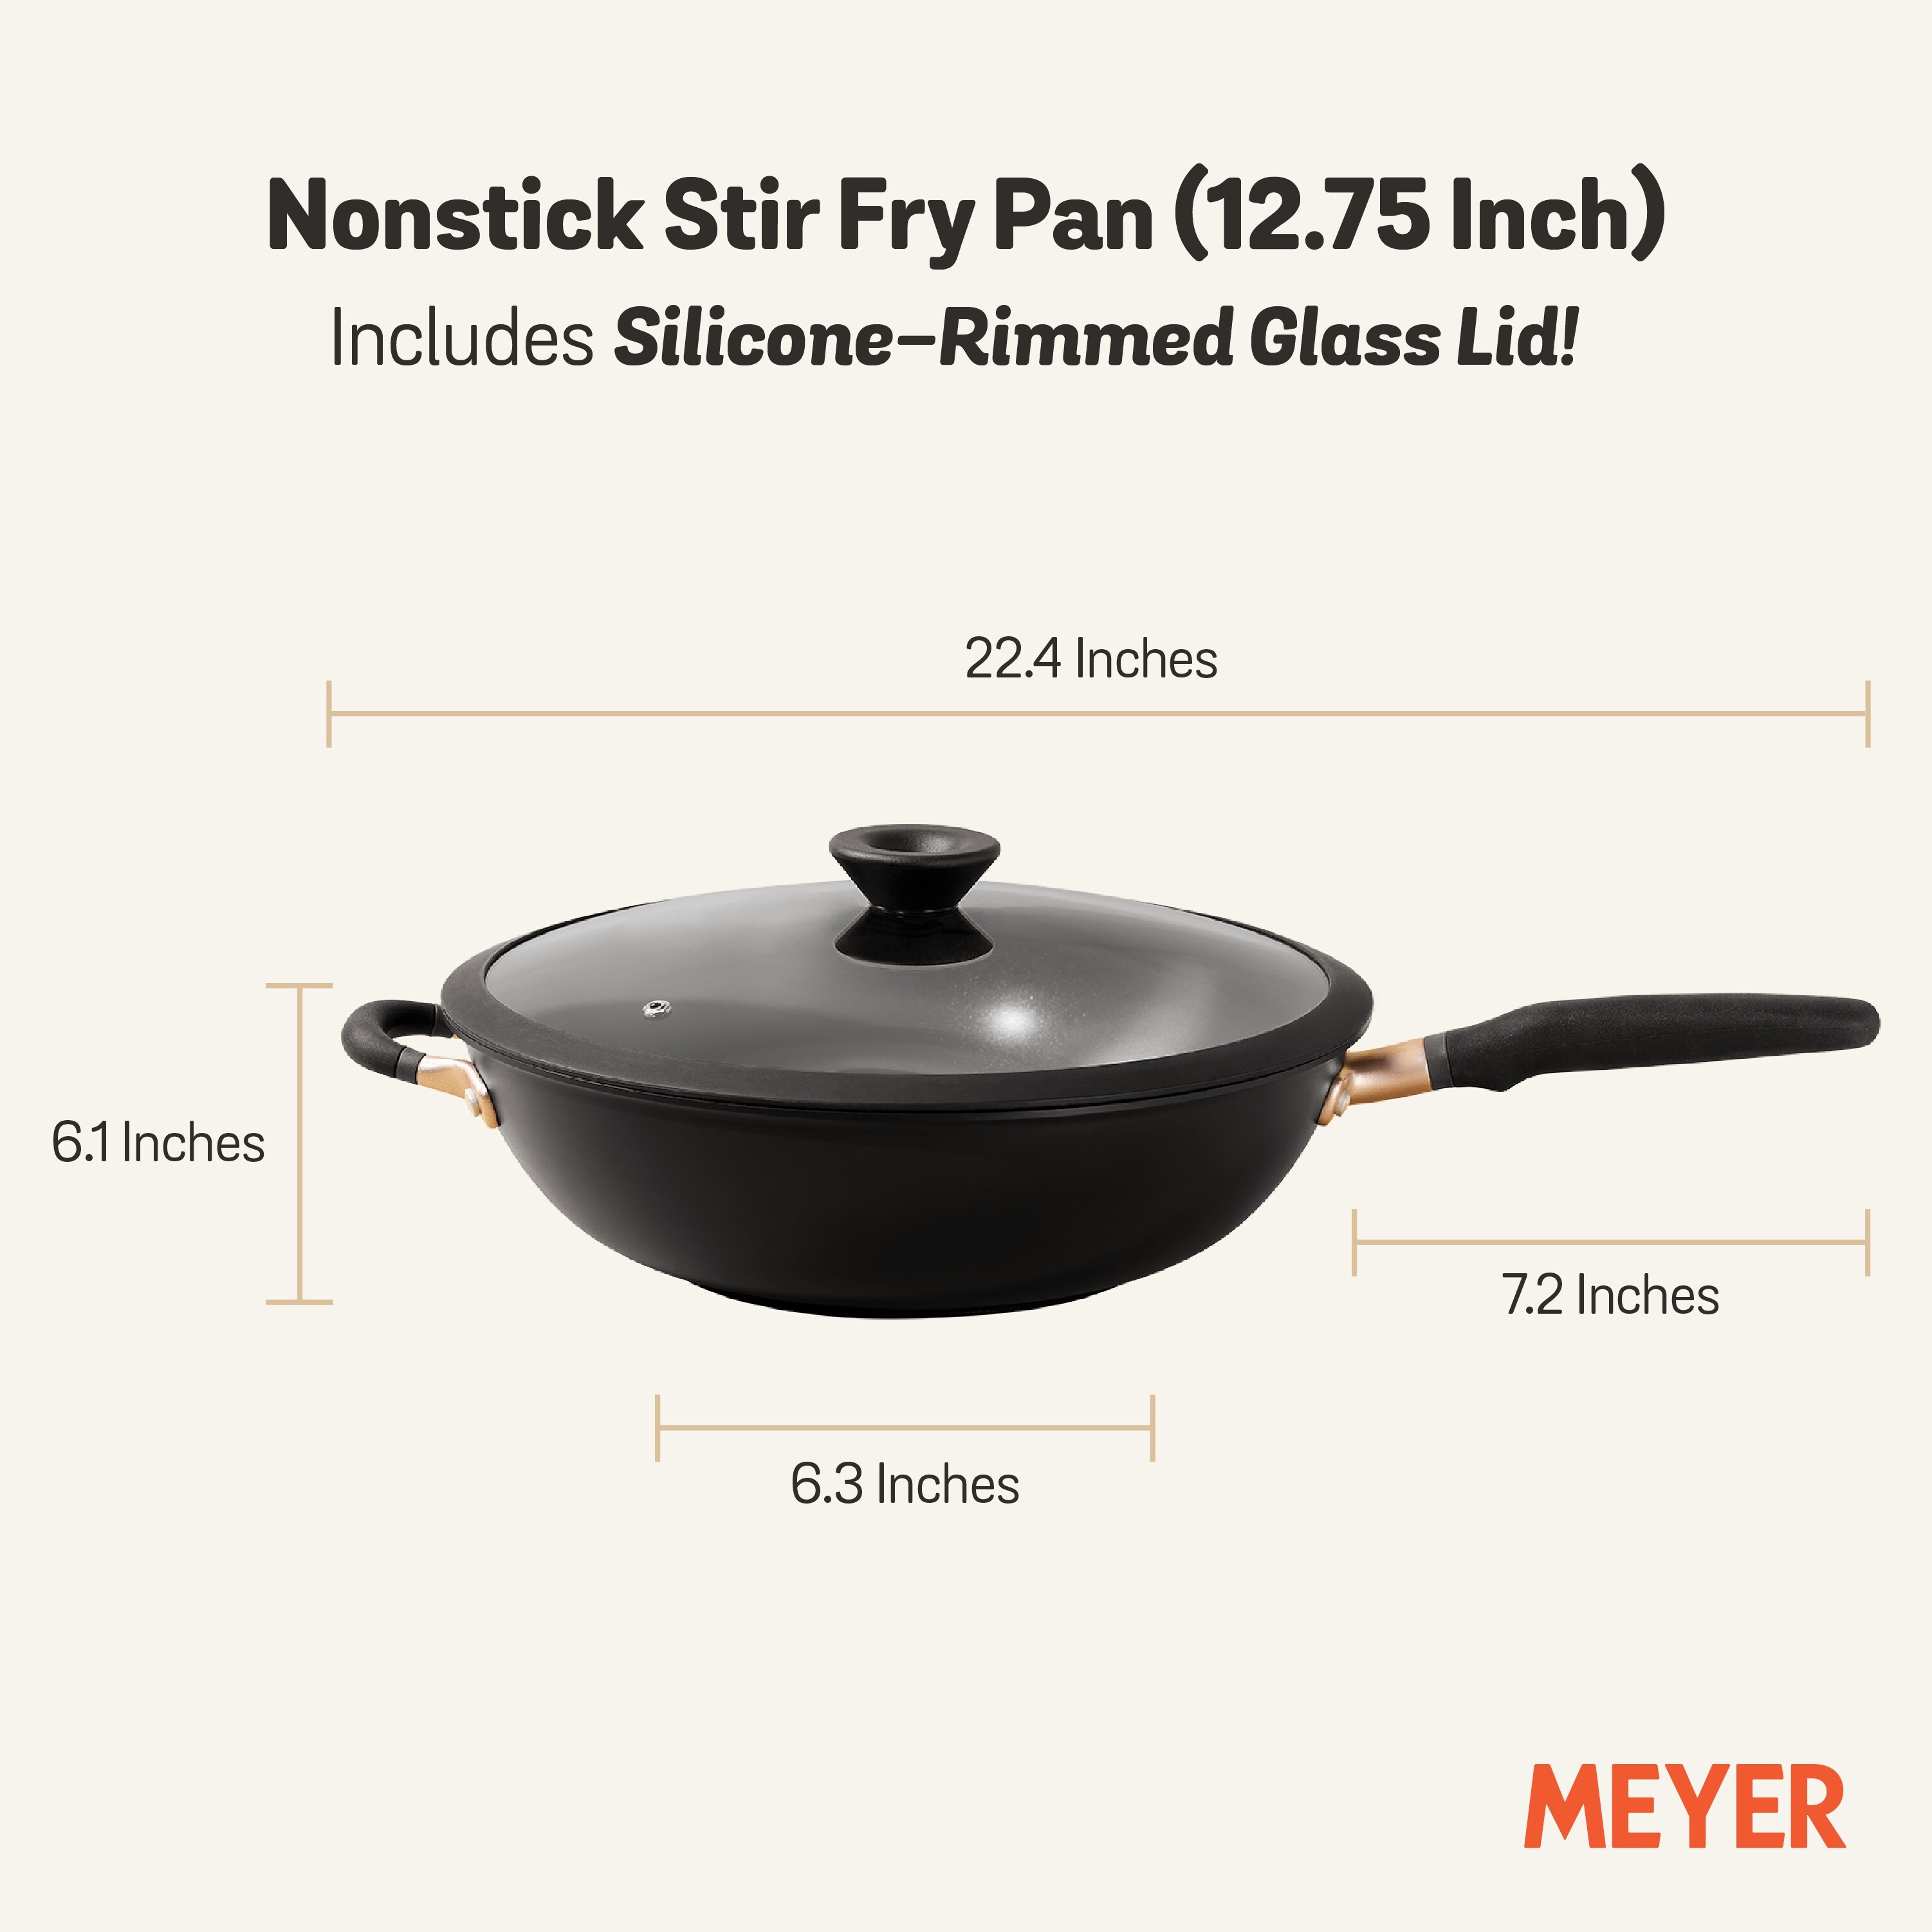 Meyer Circulon Elementum 10 Pc. Hard Anodized Nonstick Cookware